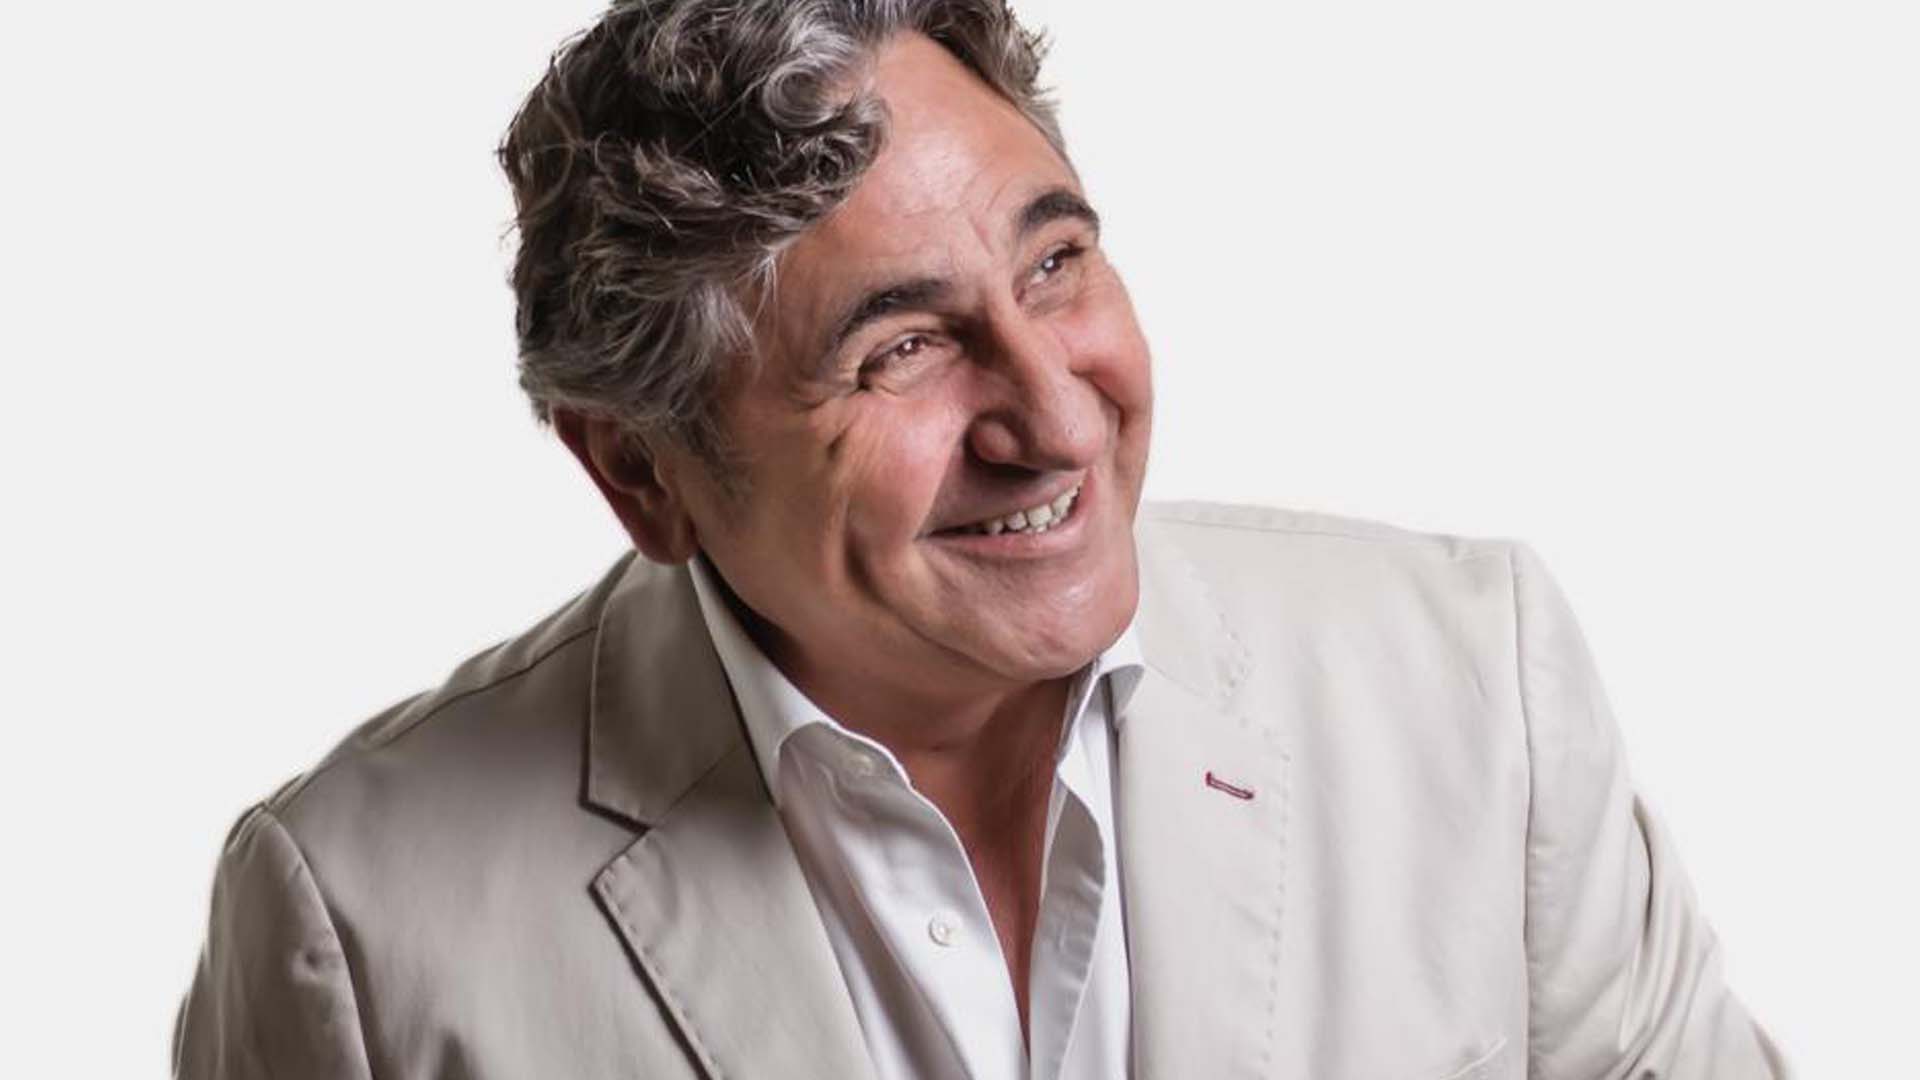 L'actor i presentador Javier Segarra serà el pregoner en la recepció del Carnestoltes a Vinaròs